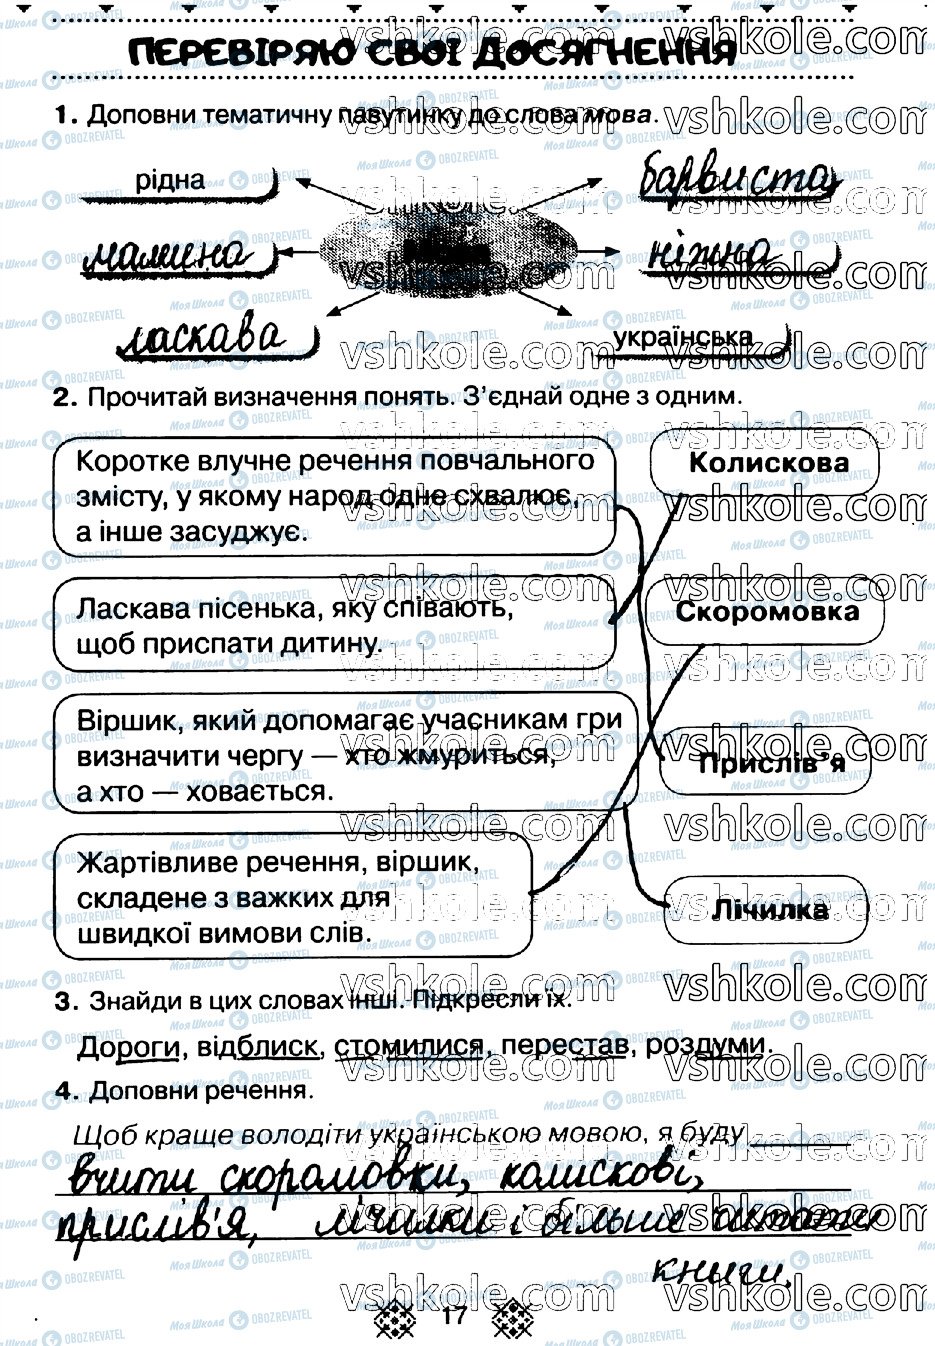 ГДЗ Укр мова 2 класс страница стр17